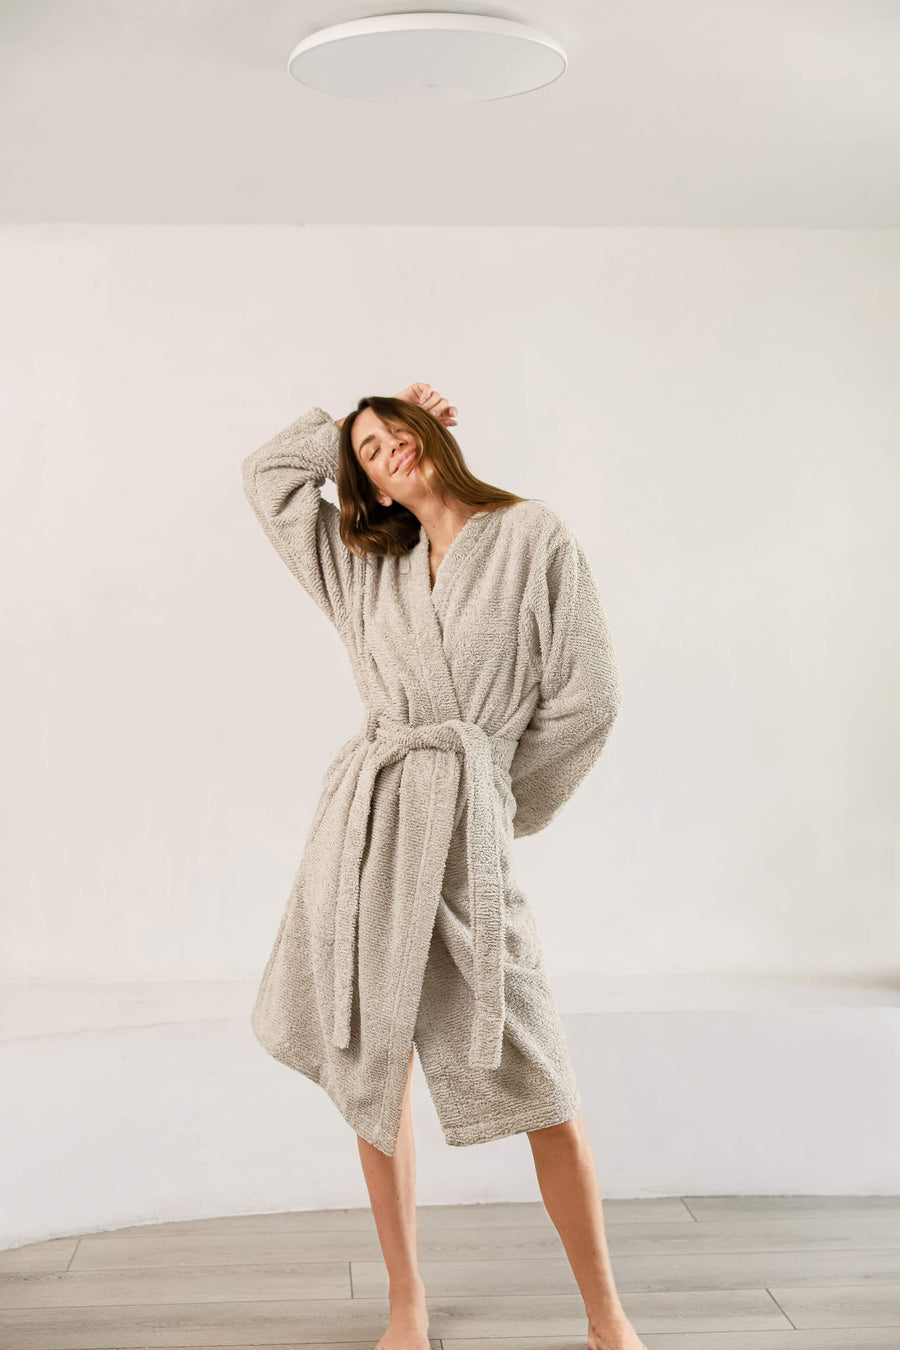 Cascais Bath Robe Linen